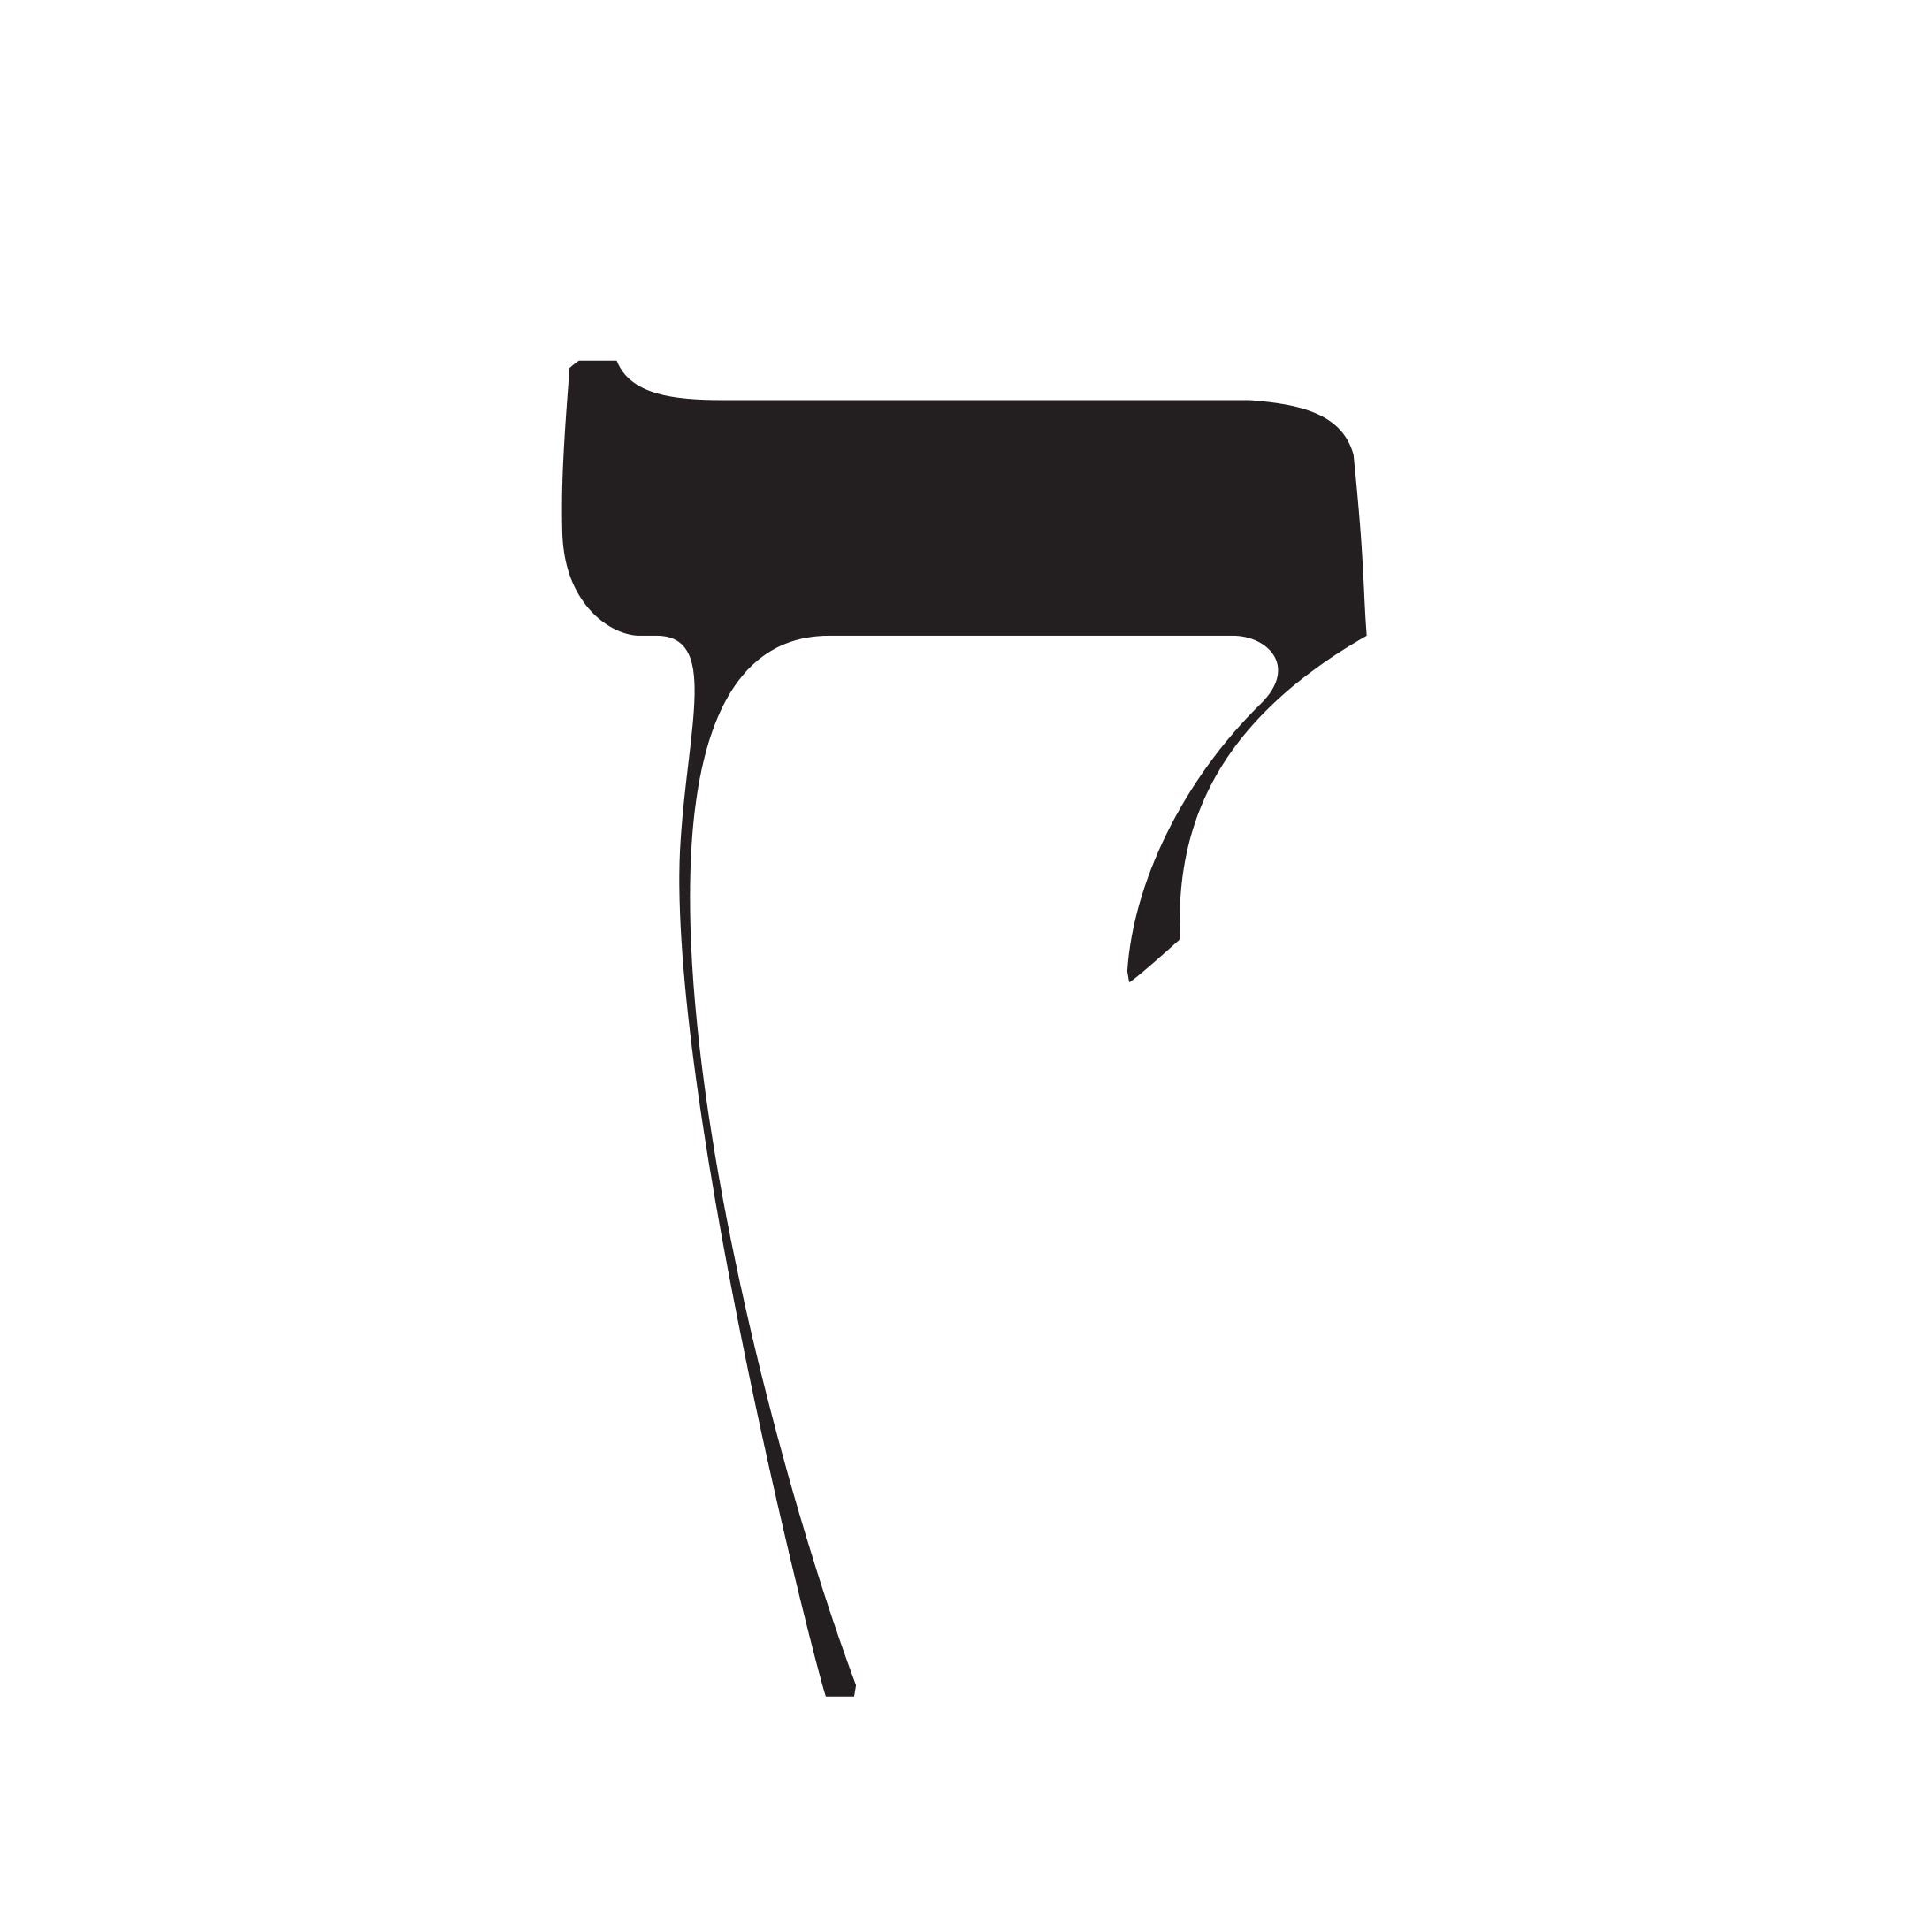 Moshik Hebrew Typeface